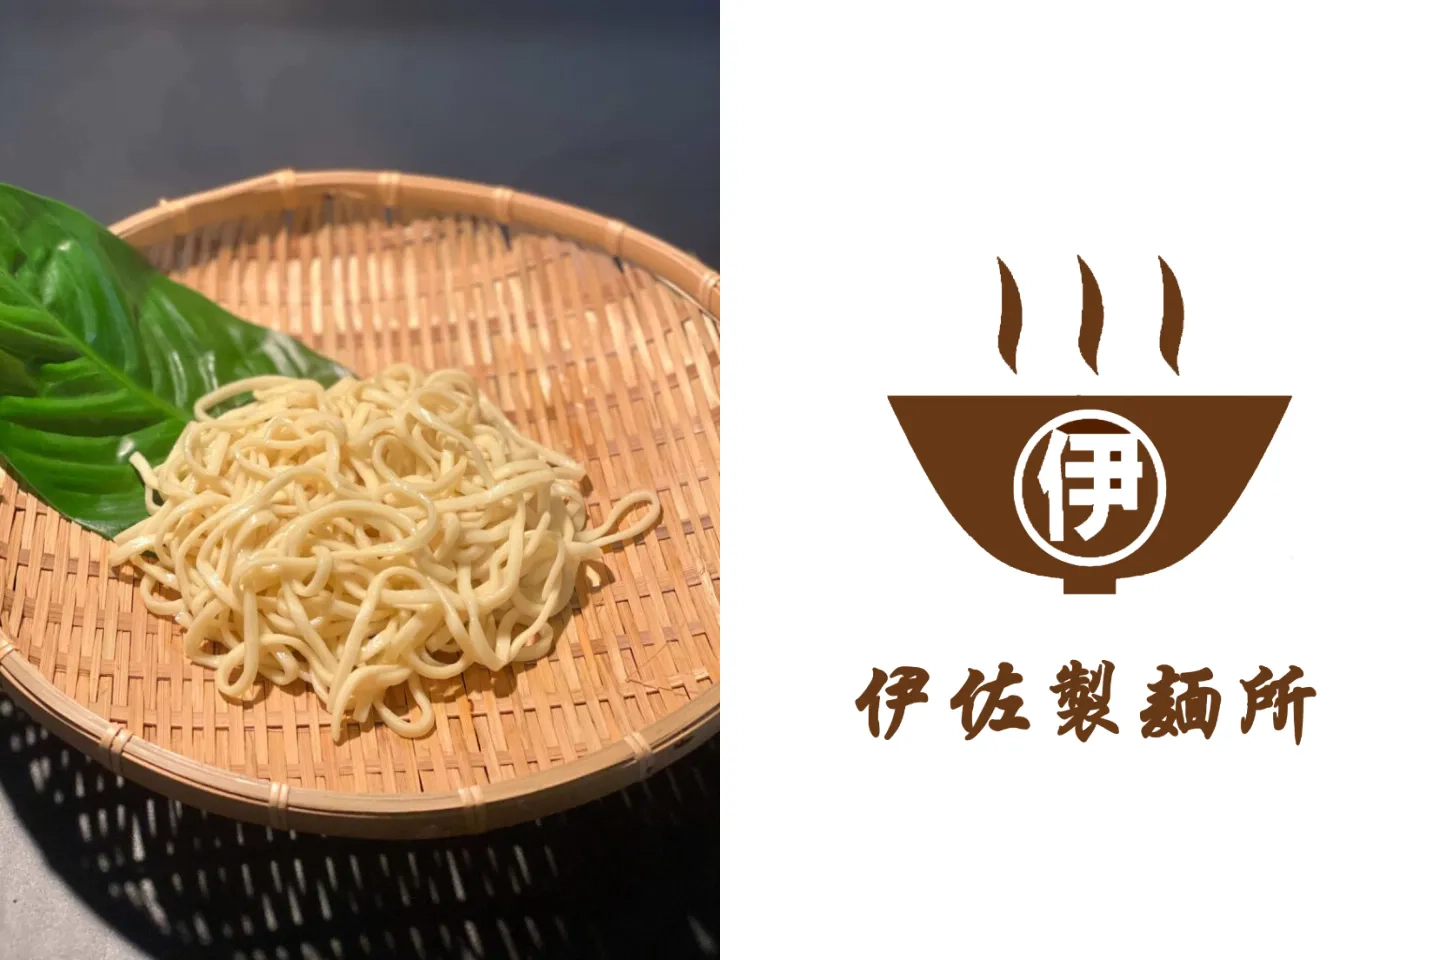 株式会社伊佐製麺所のロゴとそばの写真